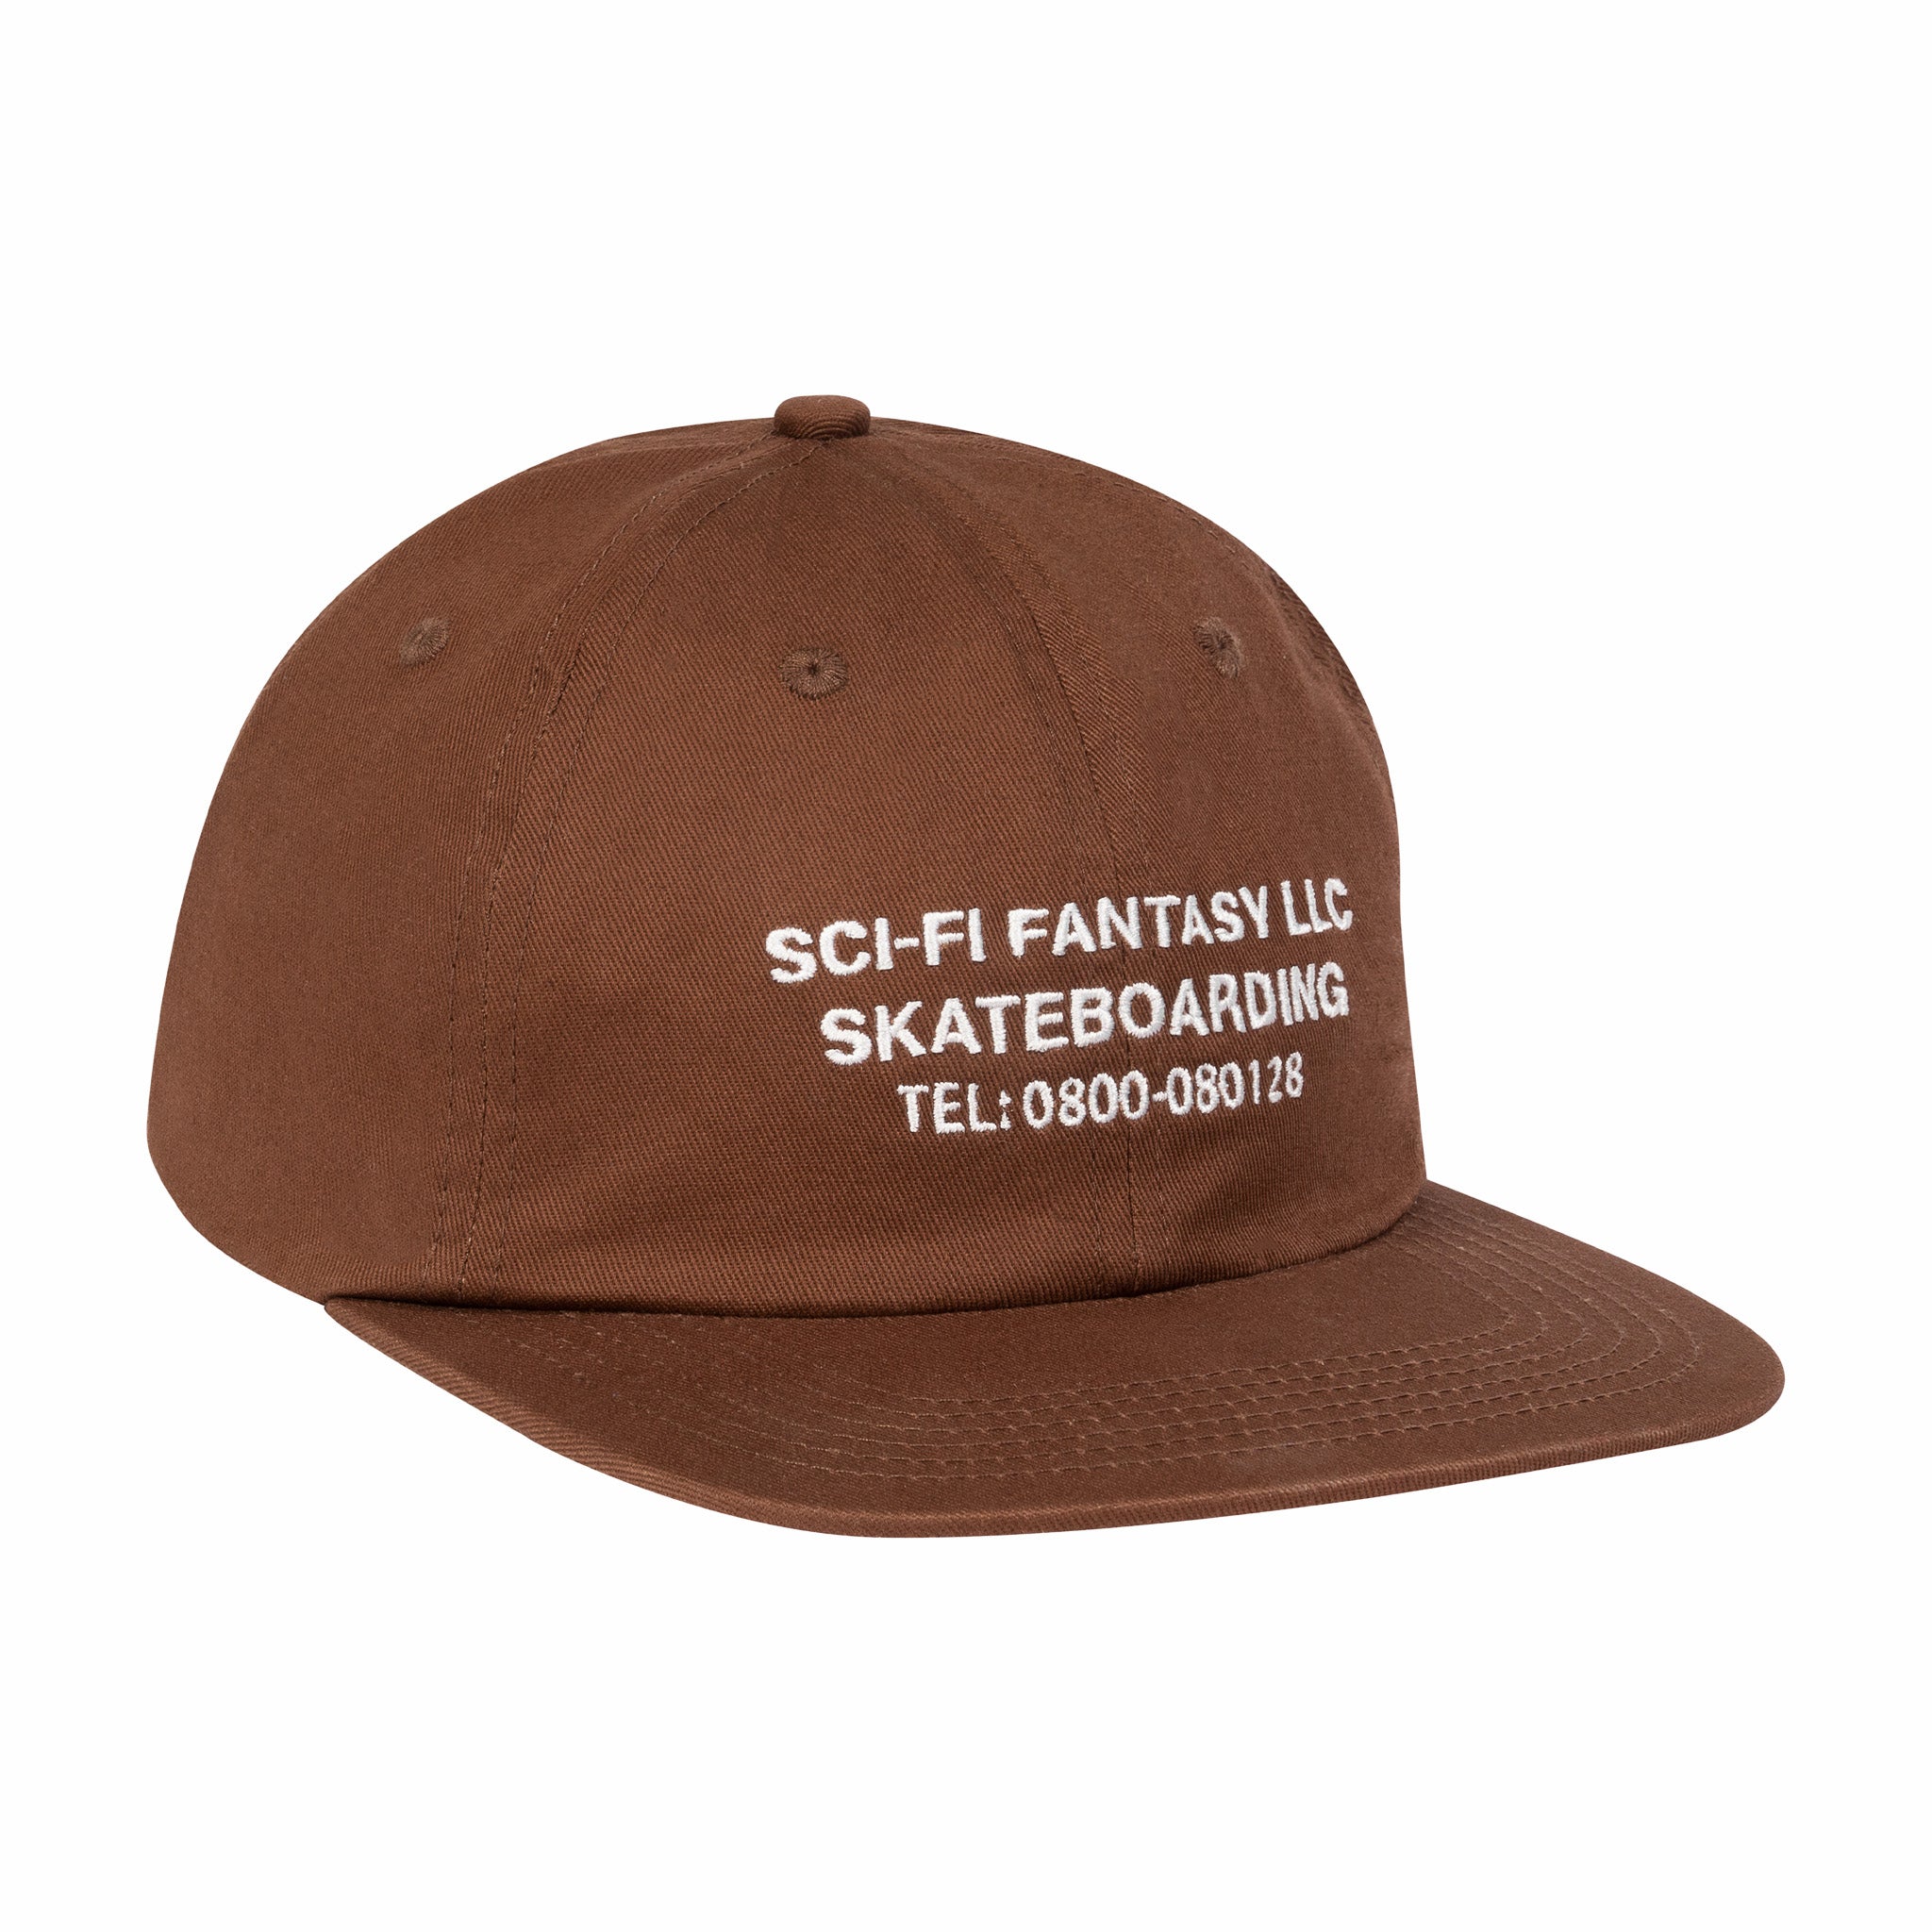 Fantasia fantascientifica, Cappello Sci-FI Fantasy LLC (marrone)